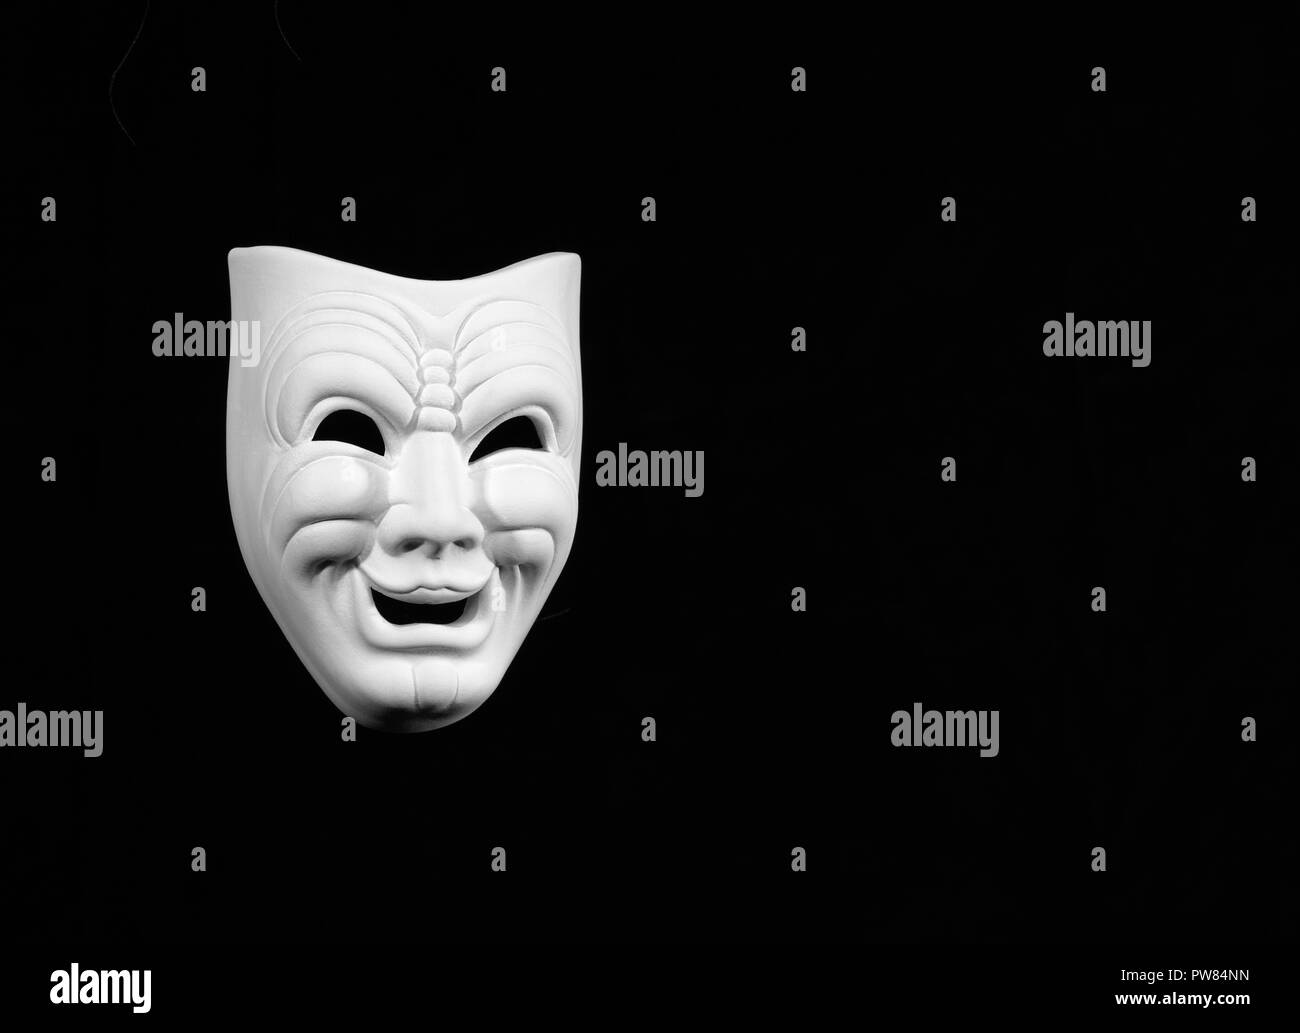 Masque de théâtre le expresing comédie, masque blanc sur fond noir avec de l'espace libre pour le texte Banque D'Images